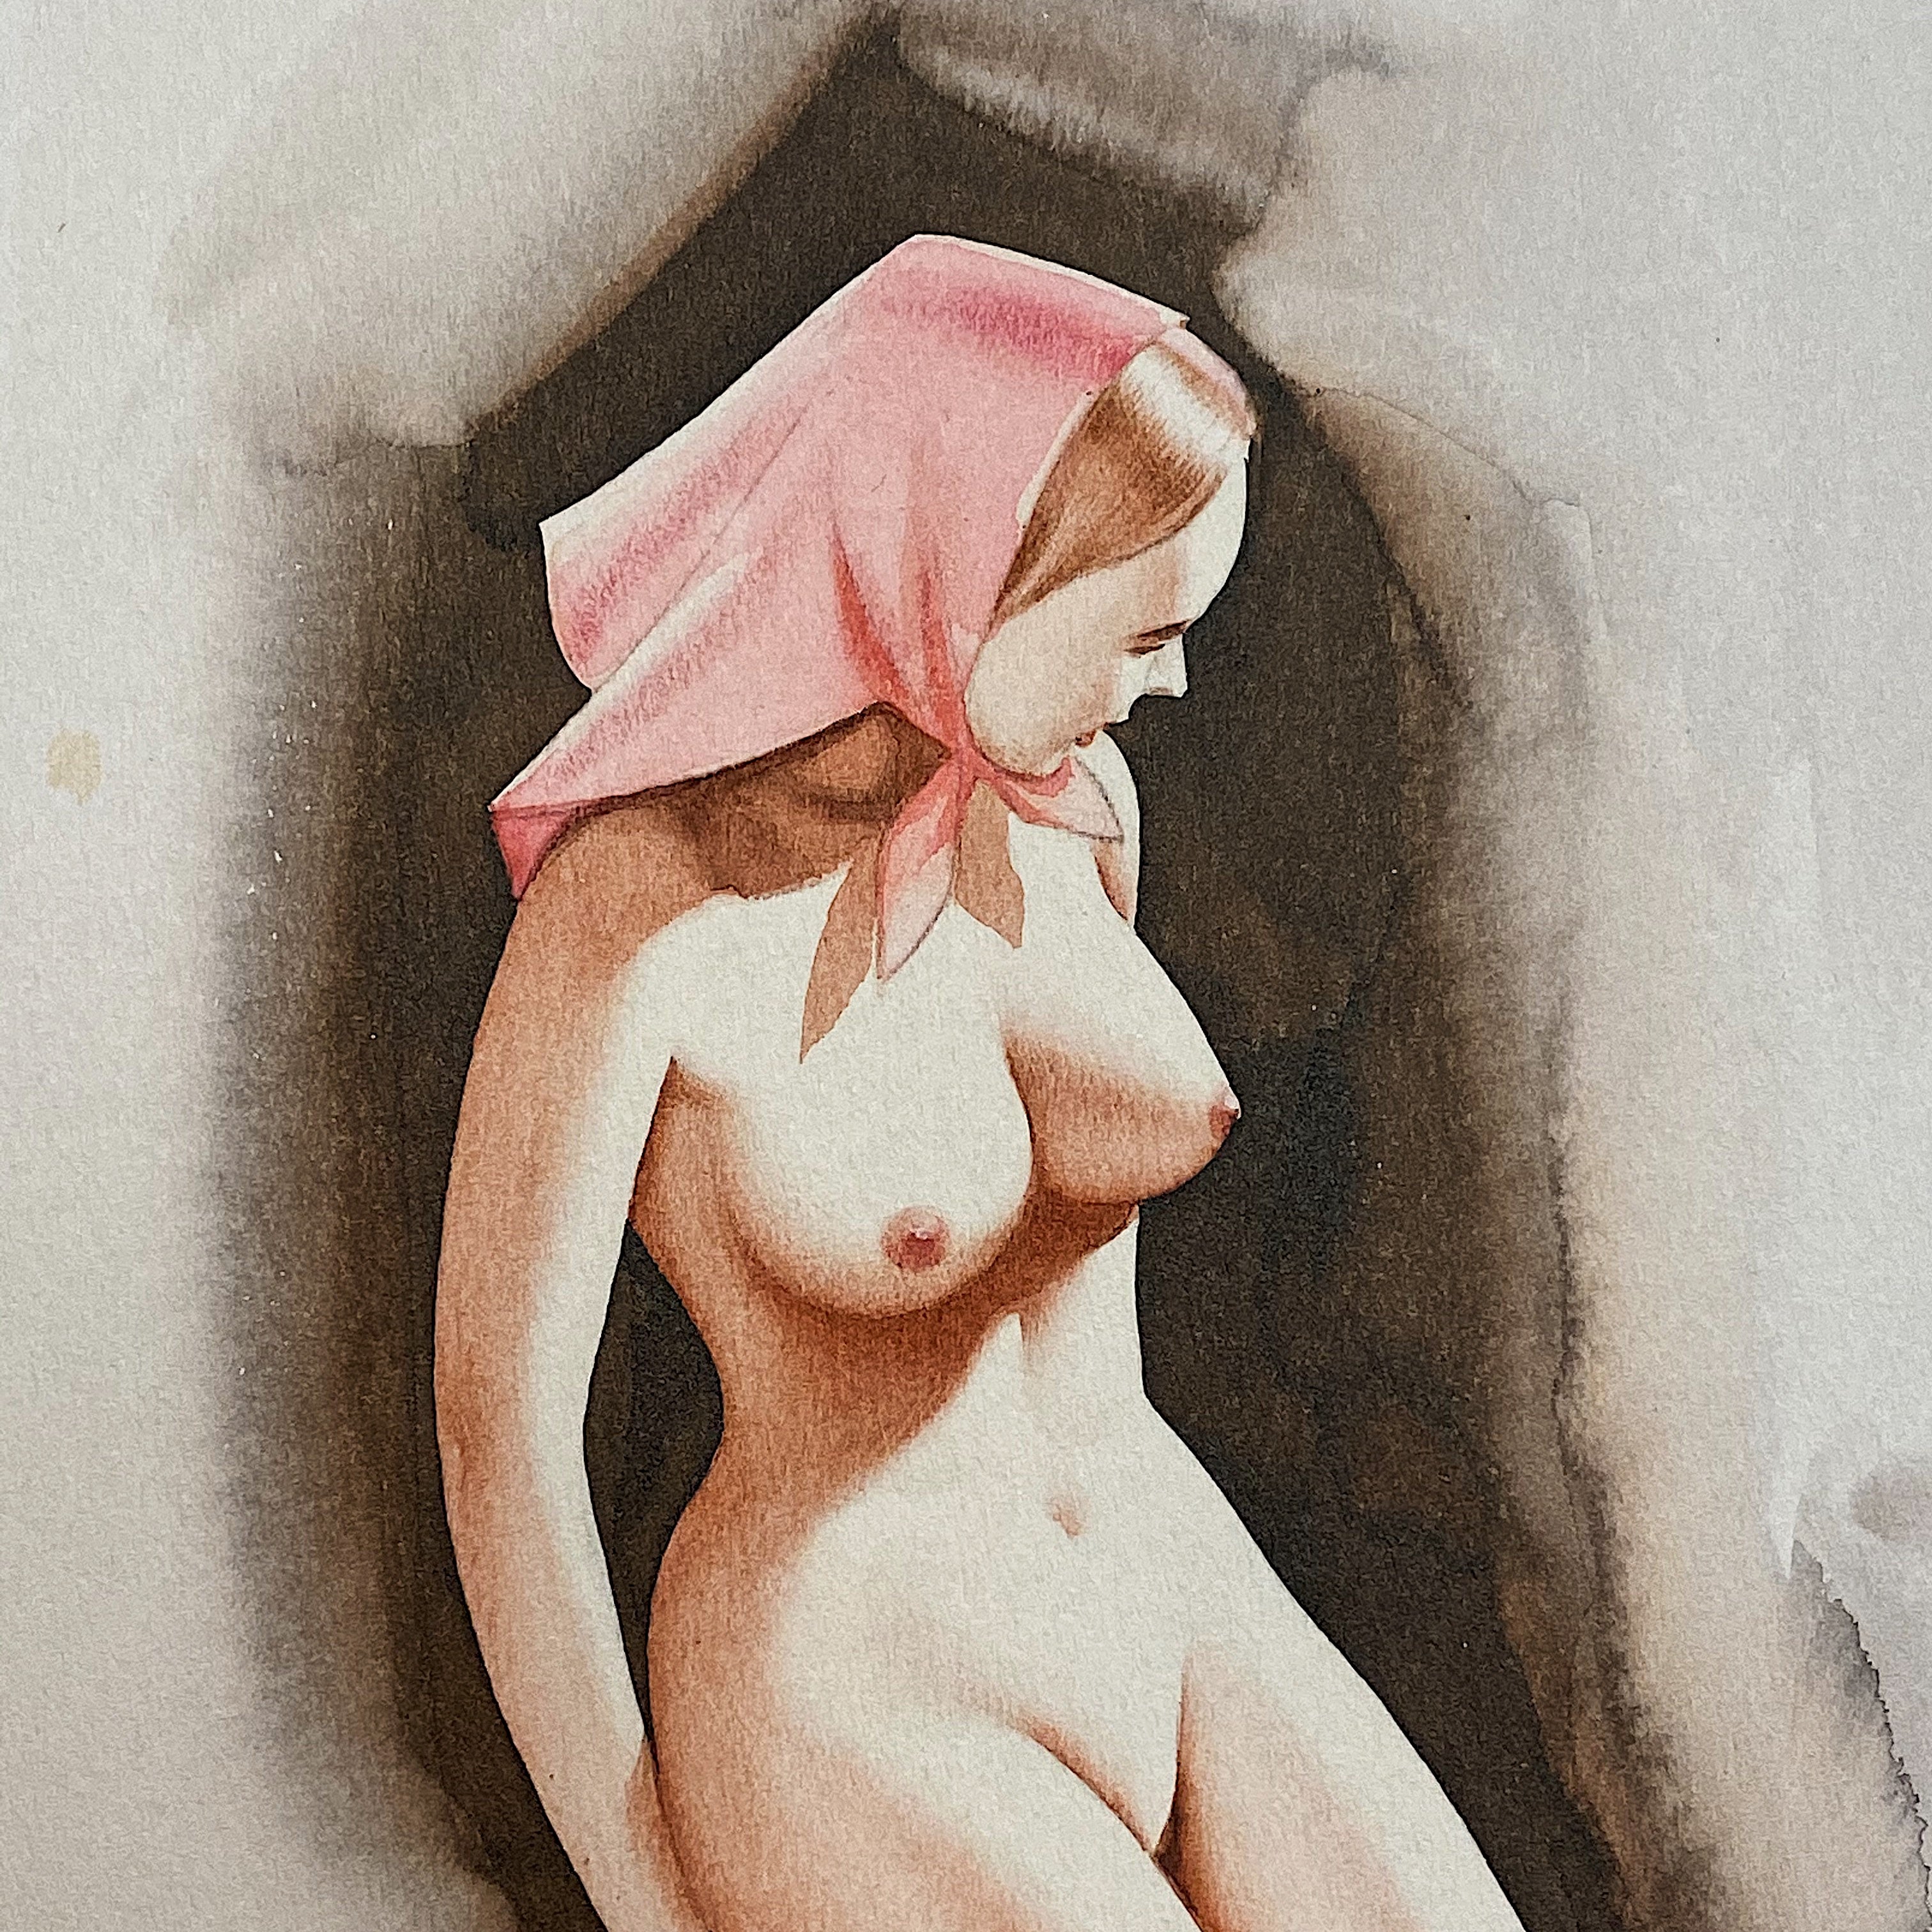 Warner Kreuter Pinup Nude Artwork - 1950s? - Pastel on Paper - Signed by Listed Artist - Wisconsin Illustration Artist